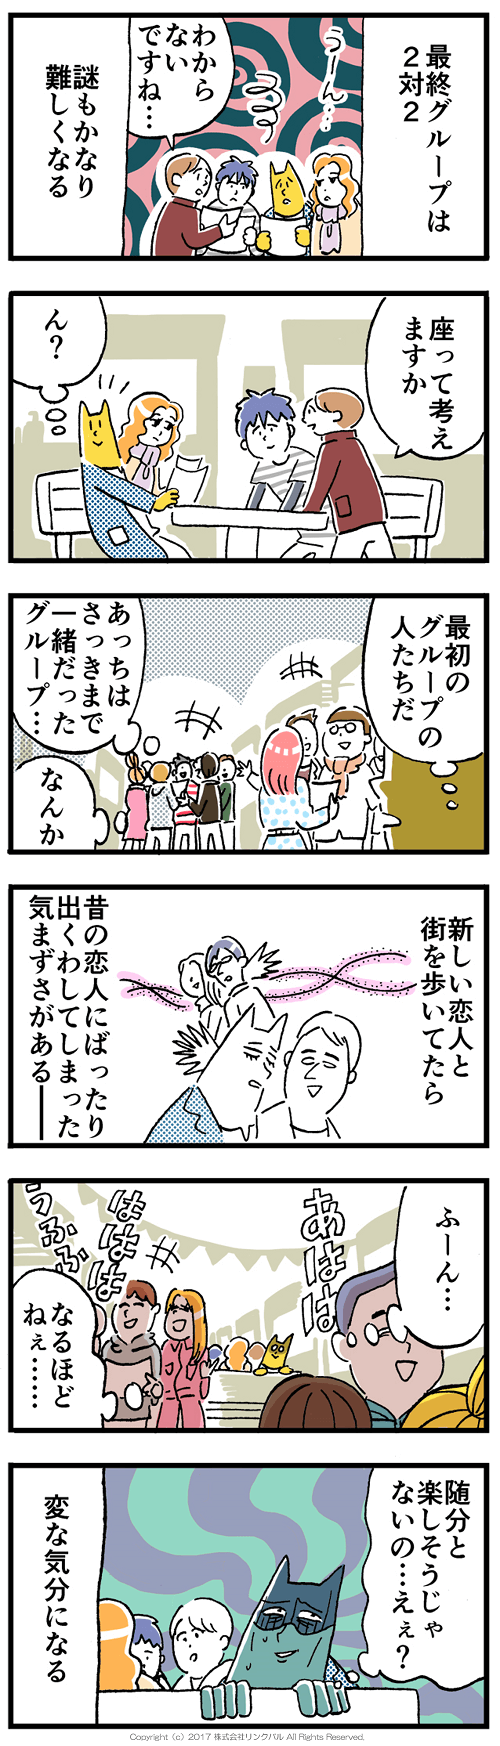 【婚活漫画】アラサー街コン物語・第14話「元彼」